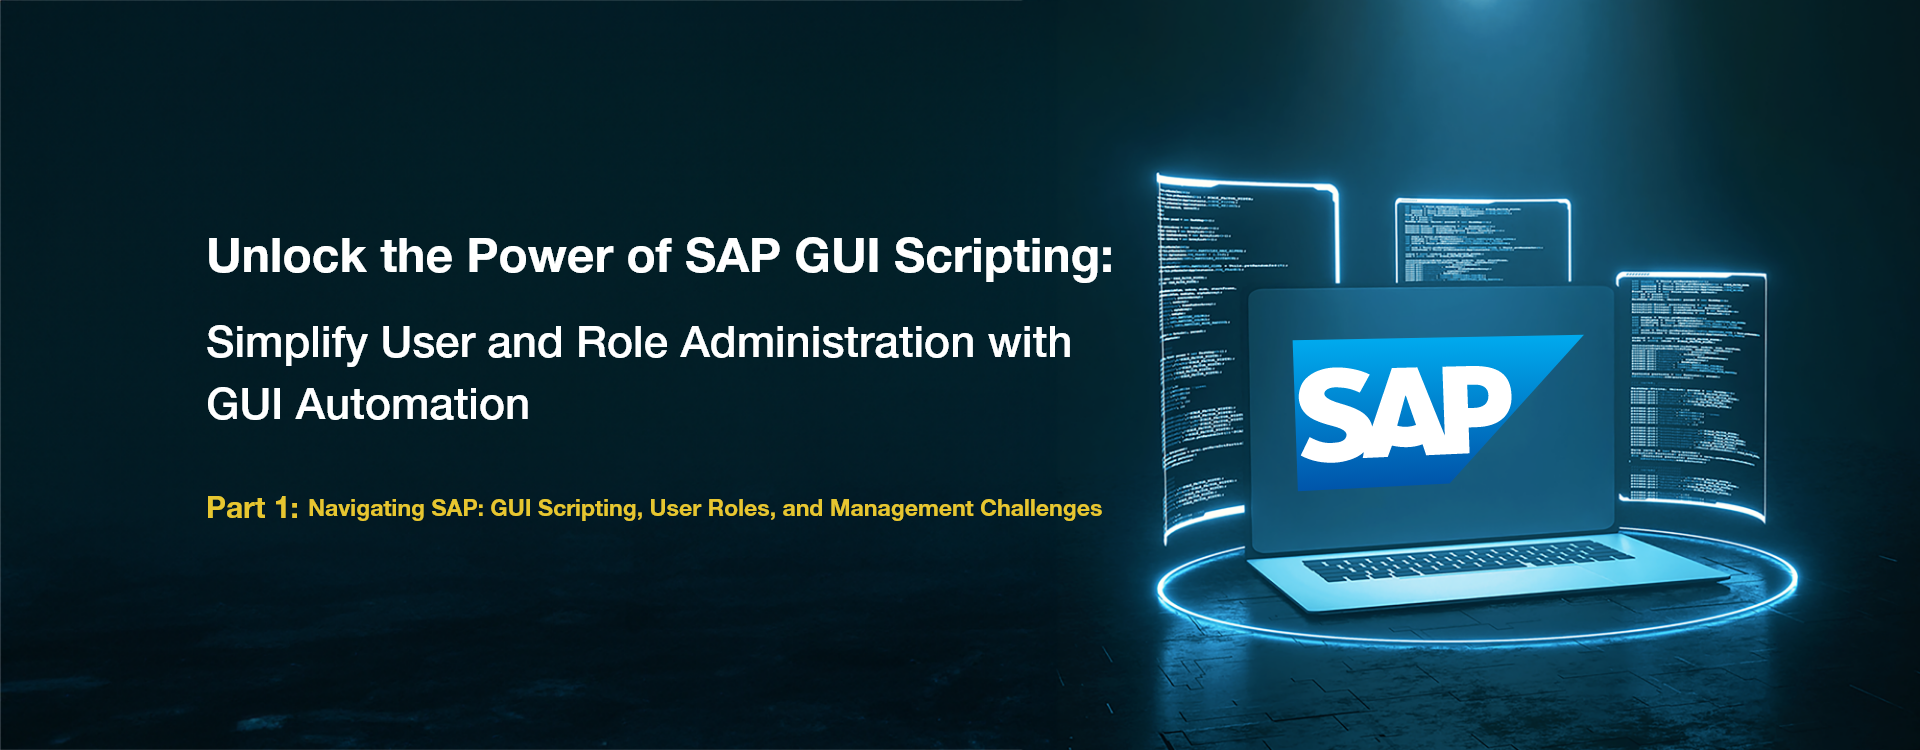 SAP-UI-Scripting-blog-1